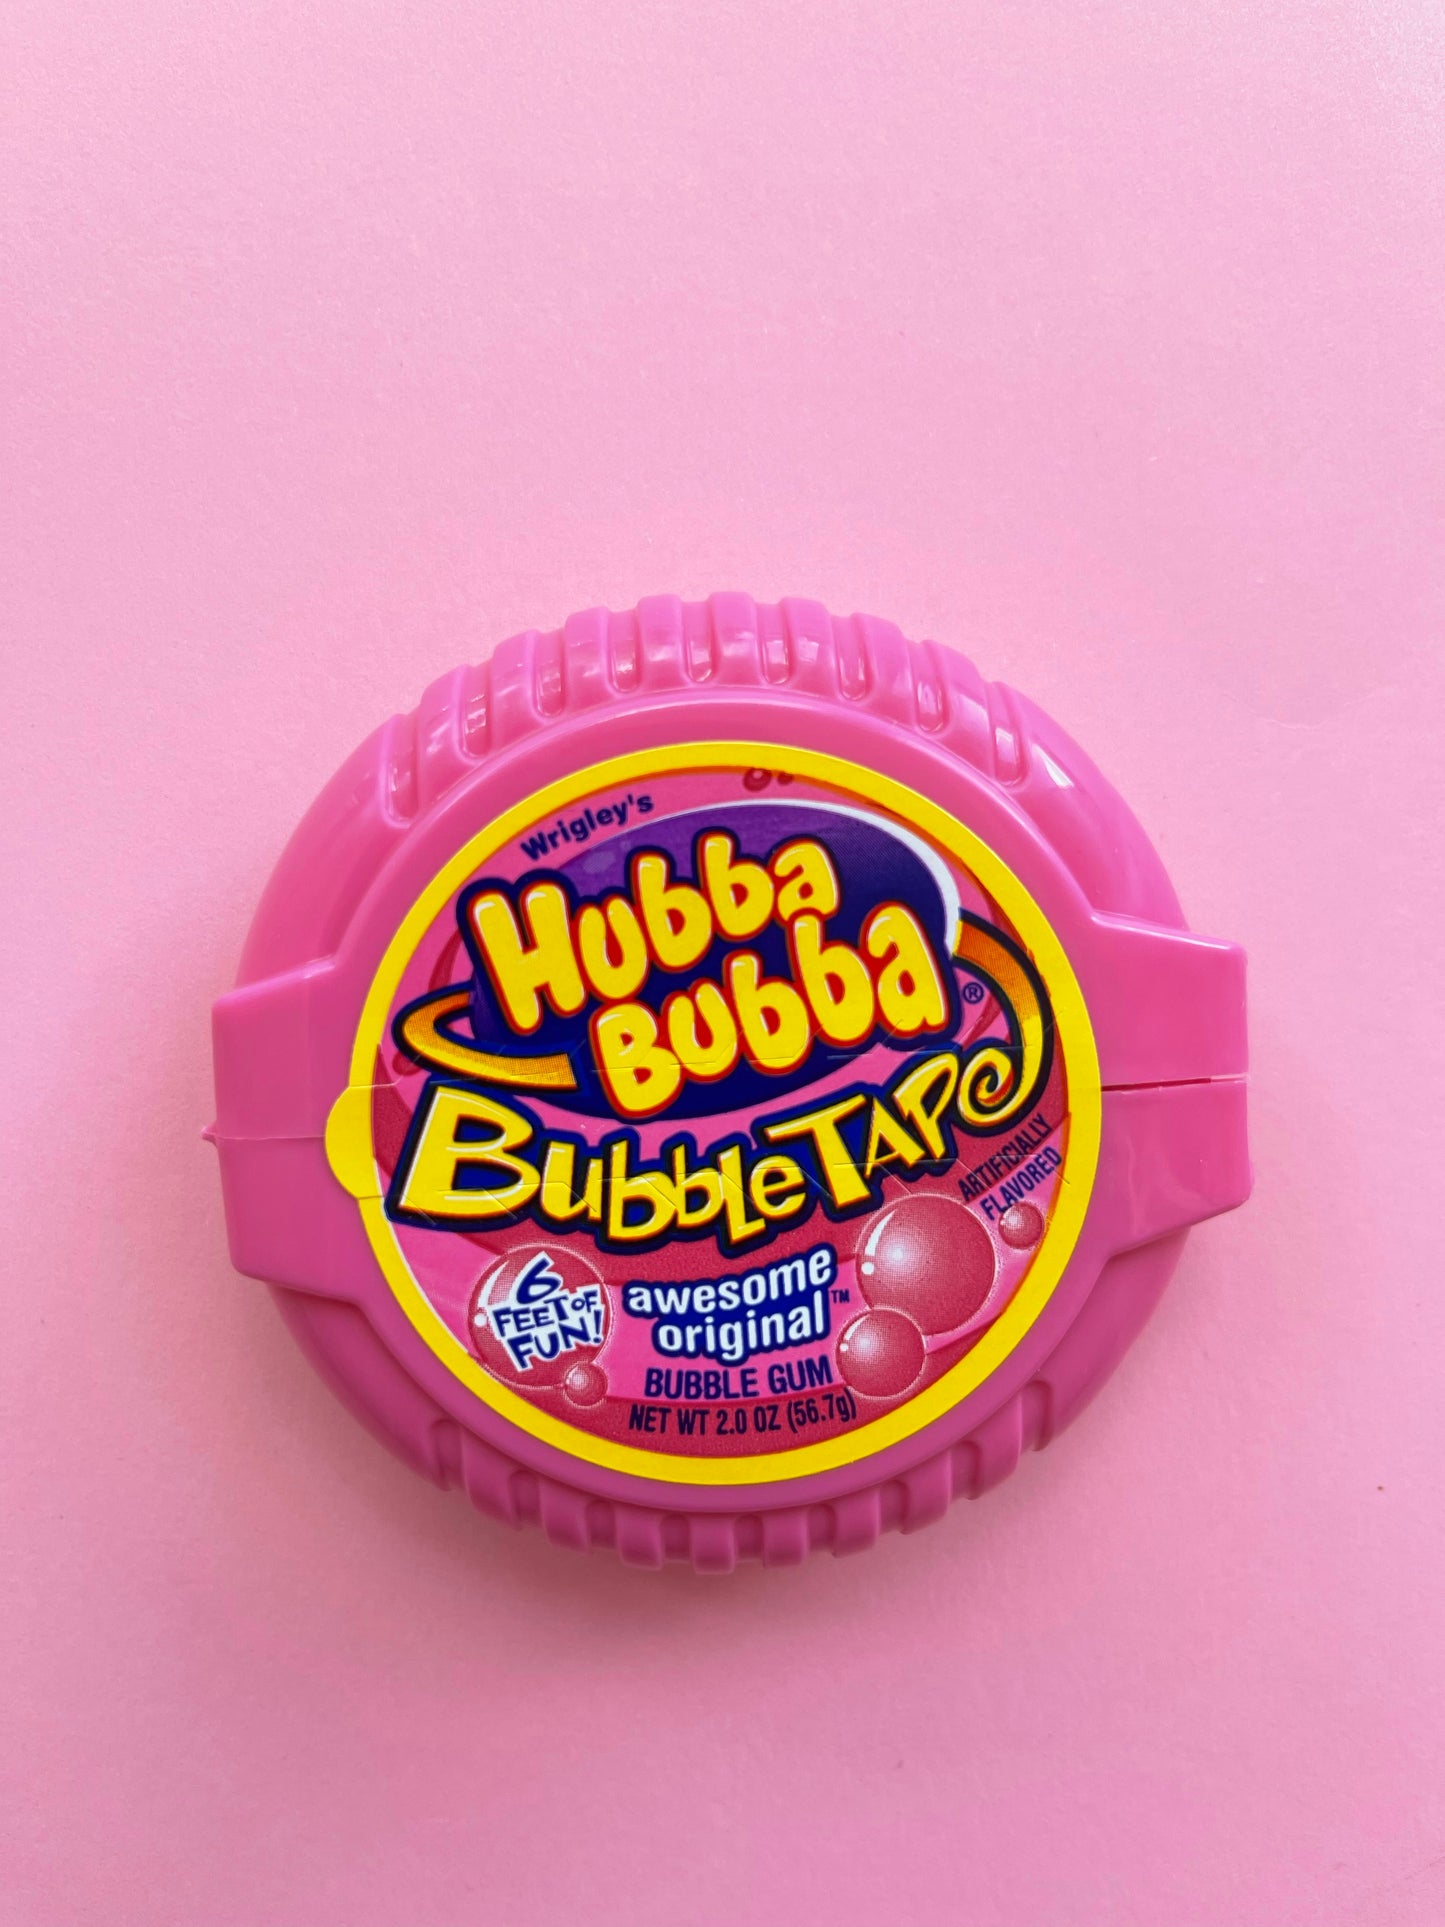 Hubba Bubba Bubble Tape -Original